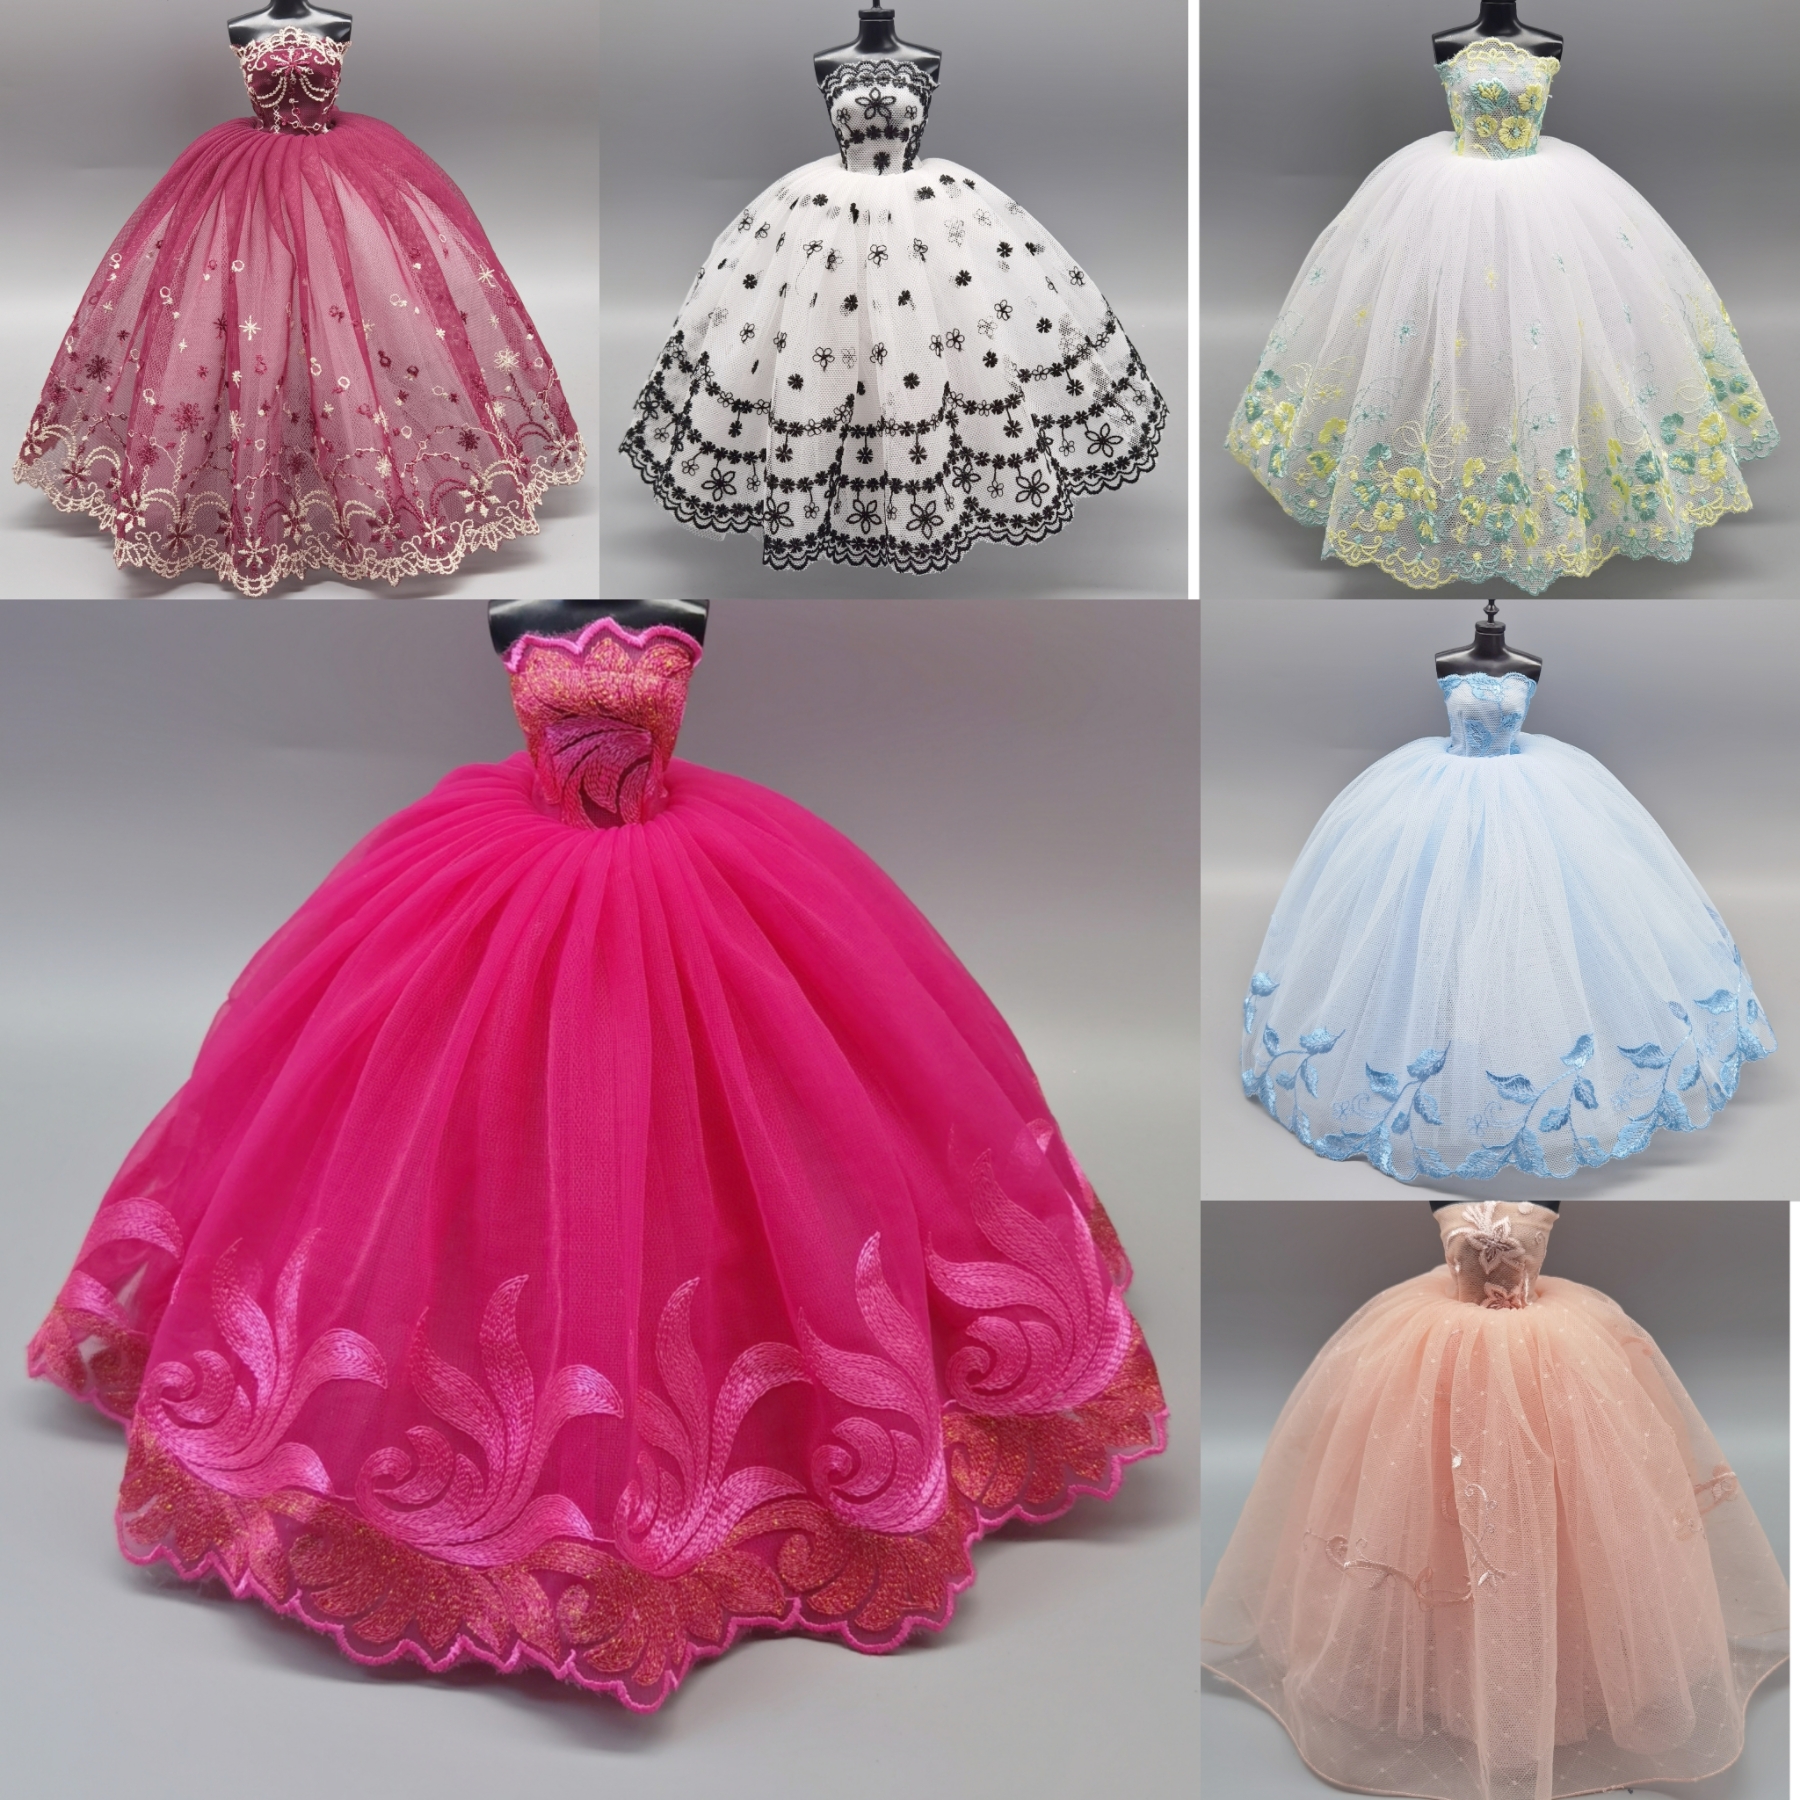 30厘米娃娃衣服娃衣配件儿童女童女孩玩具换装手工婚纱礼服